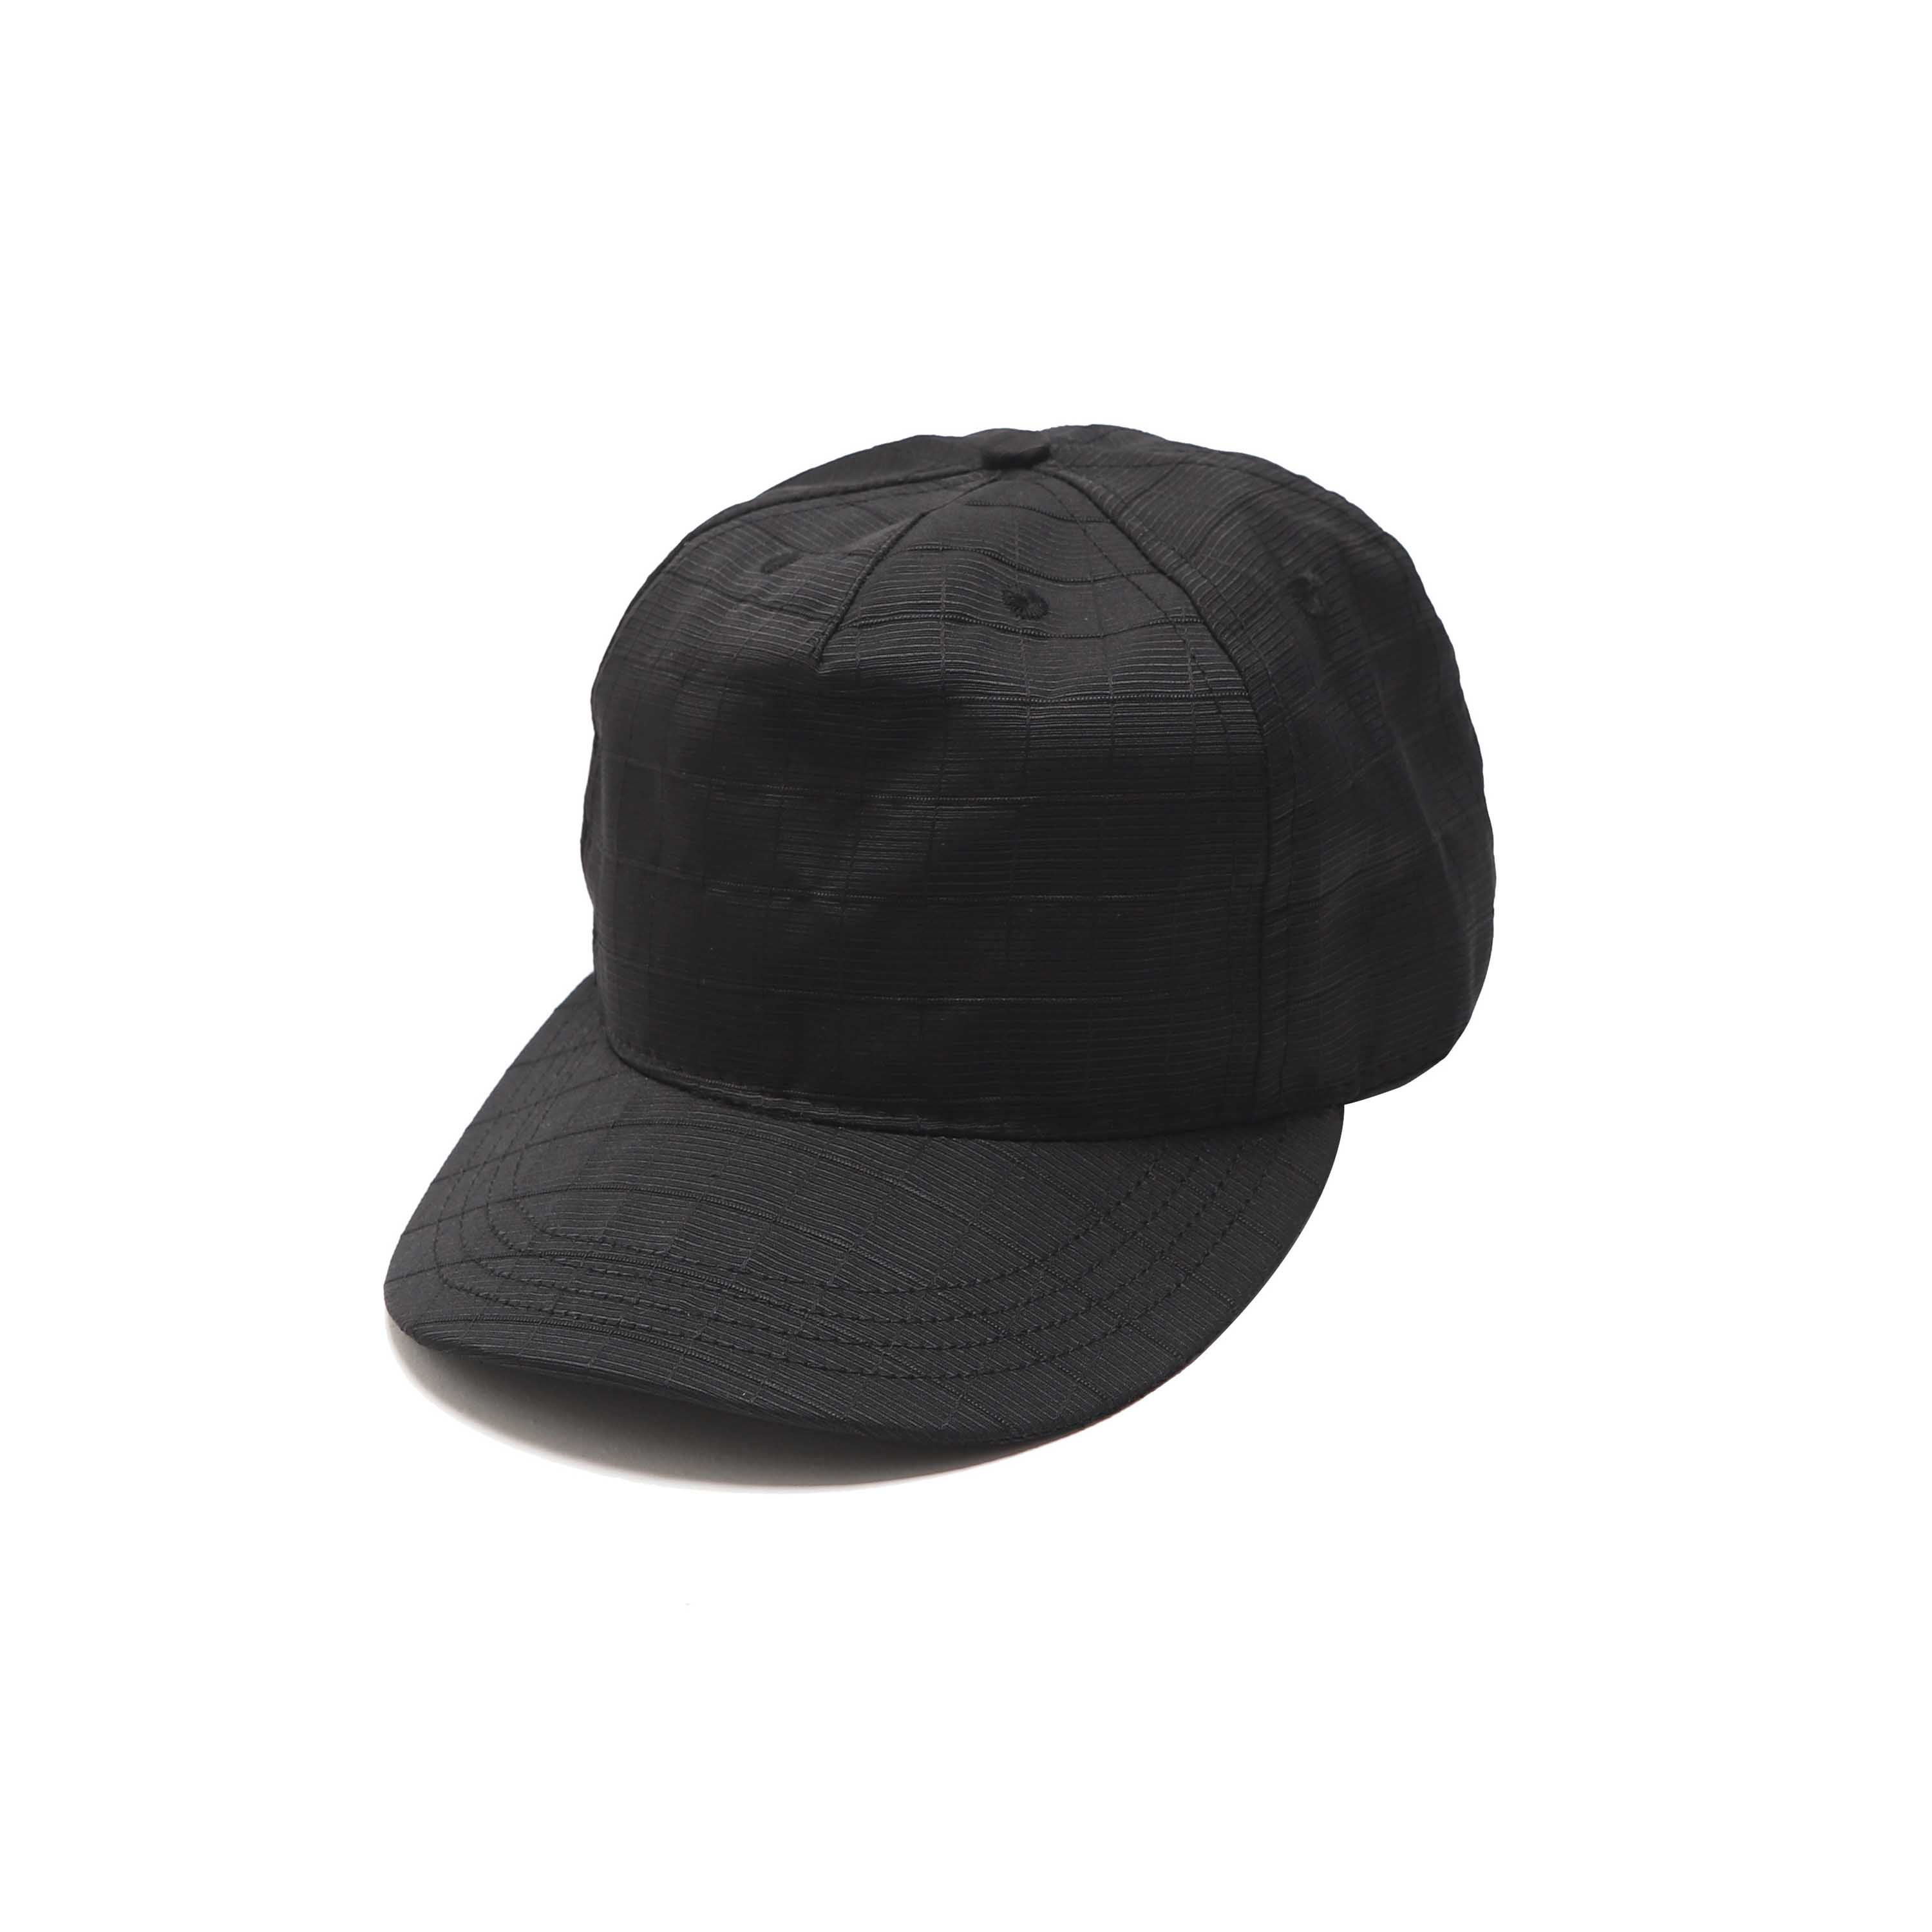 PLEAT CAP - BLACK